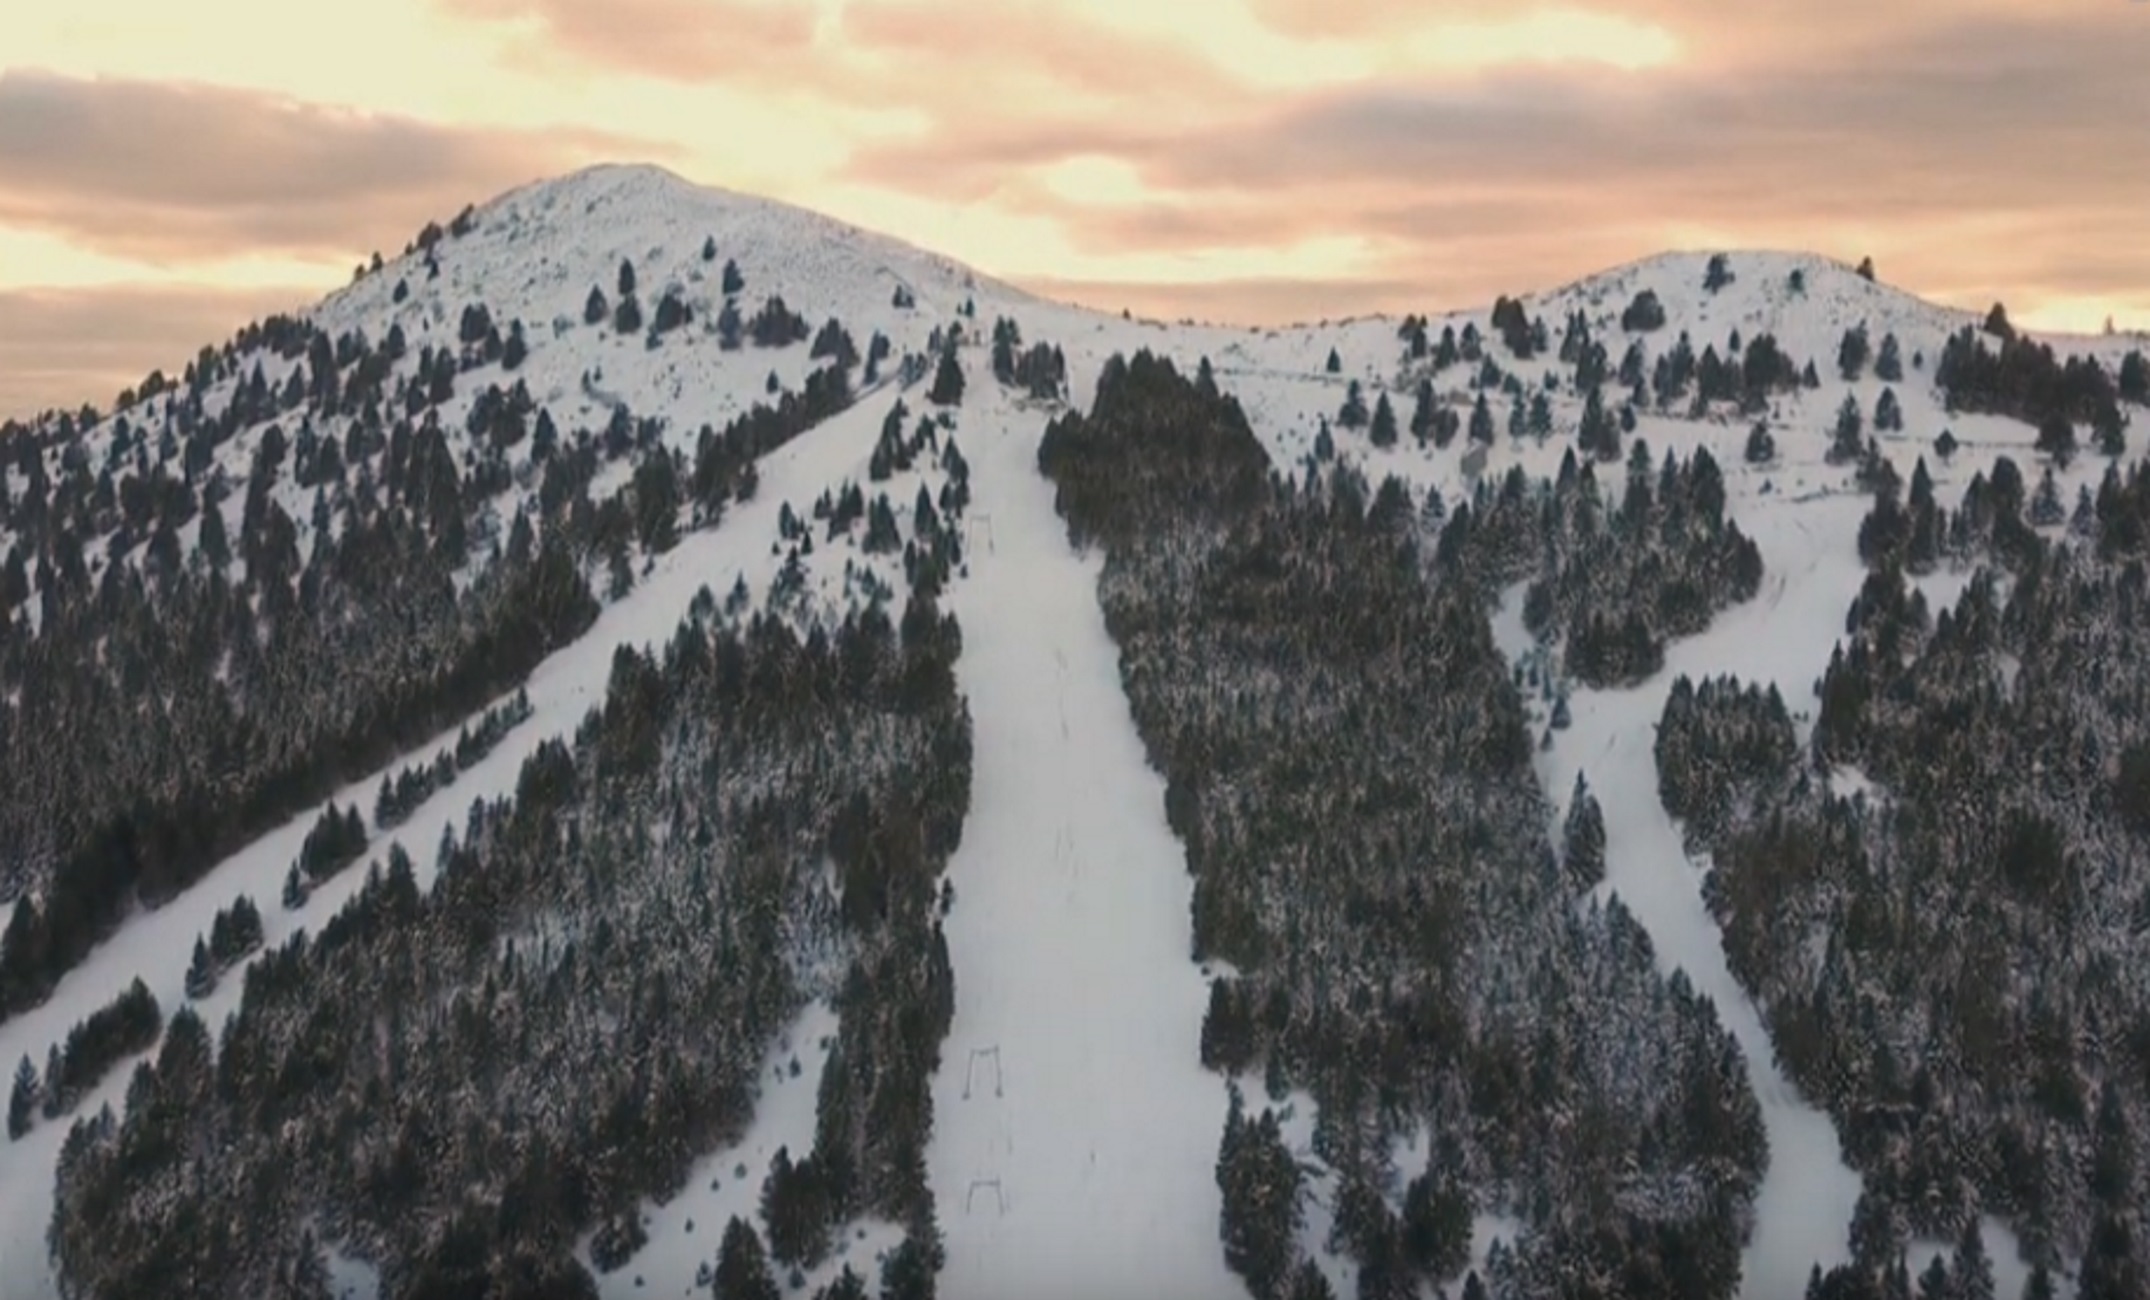 Αρκαδία: Σκέτη μαγεία το χιονοδρομικό του Μαινάλου! Ταξίδι στο βουνό των θρύλων και των παραδόσεων [video]